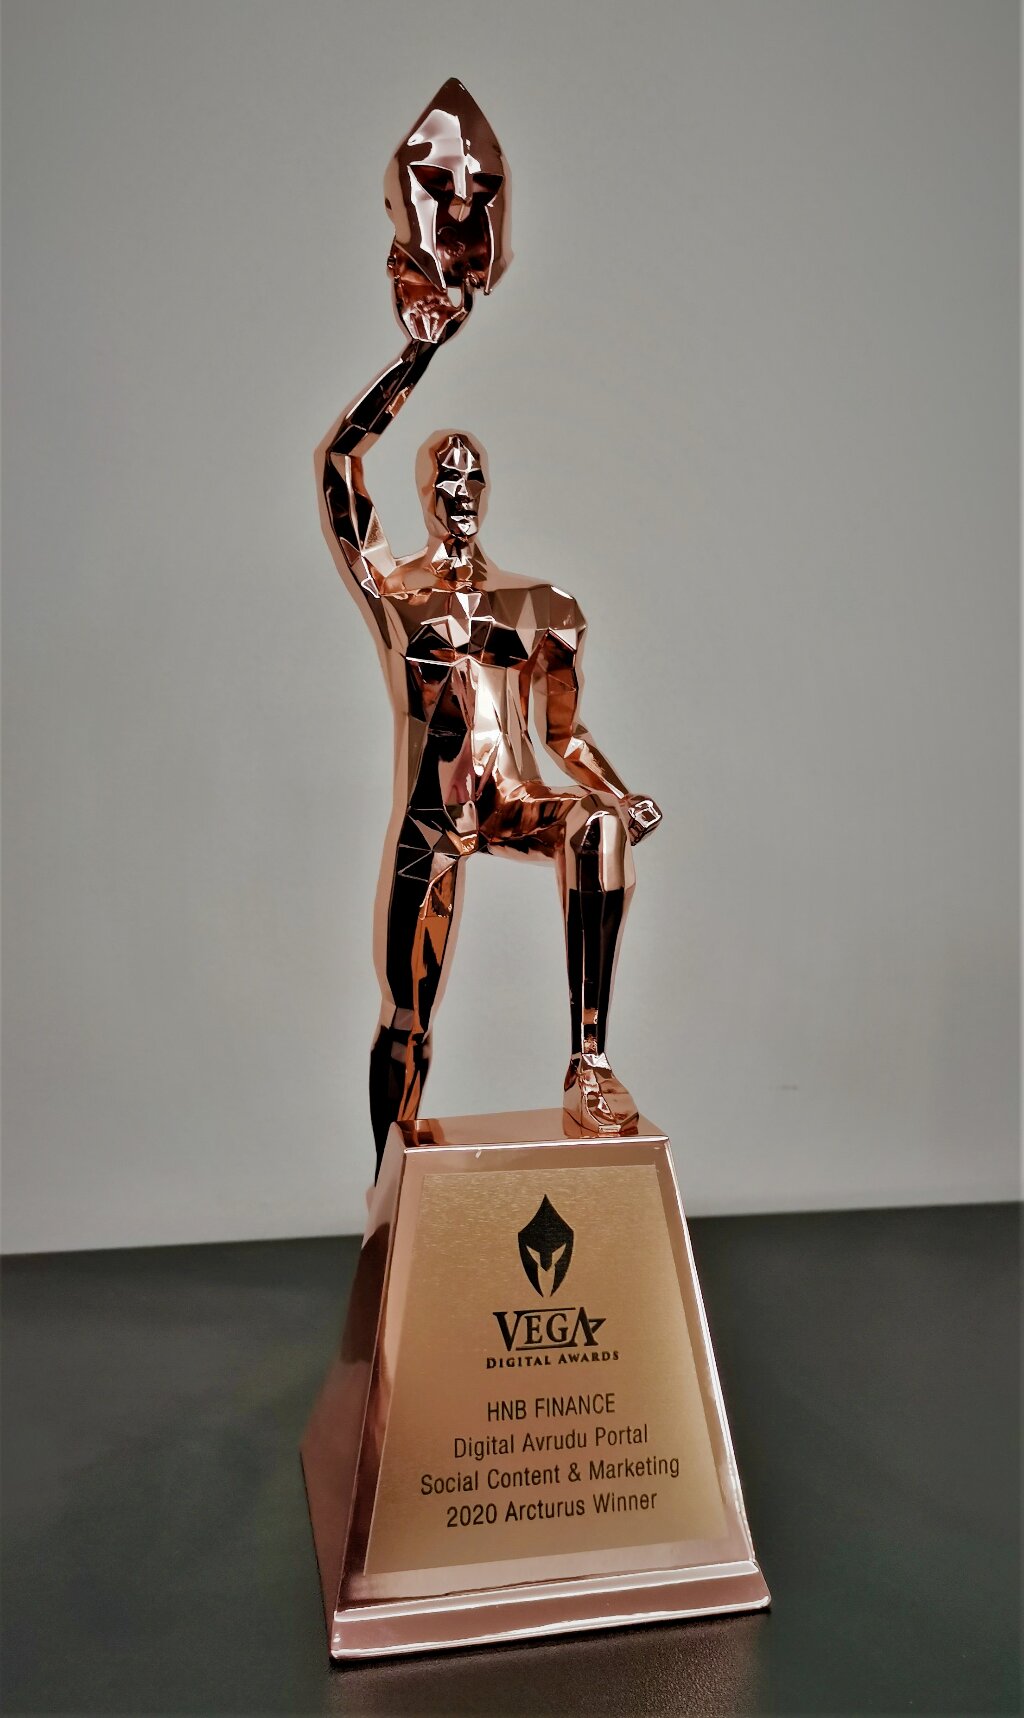 Image-2_HNB-FINANCEs-Vega-Digital-Award.jpg